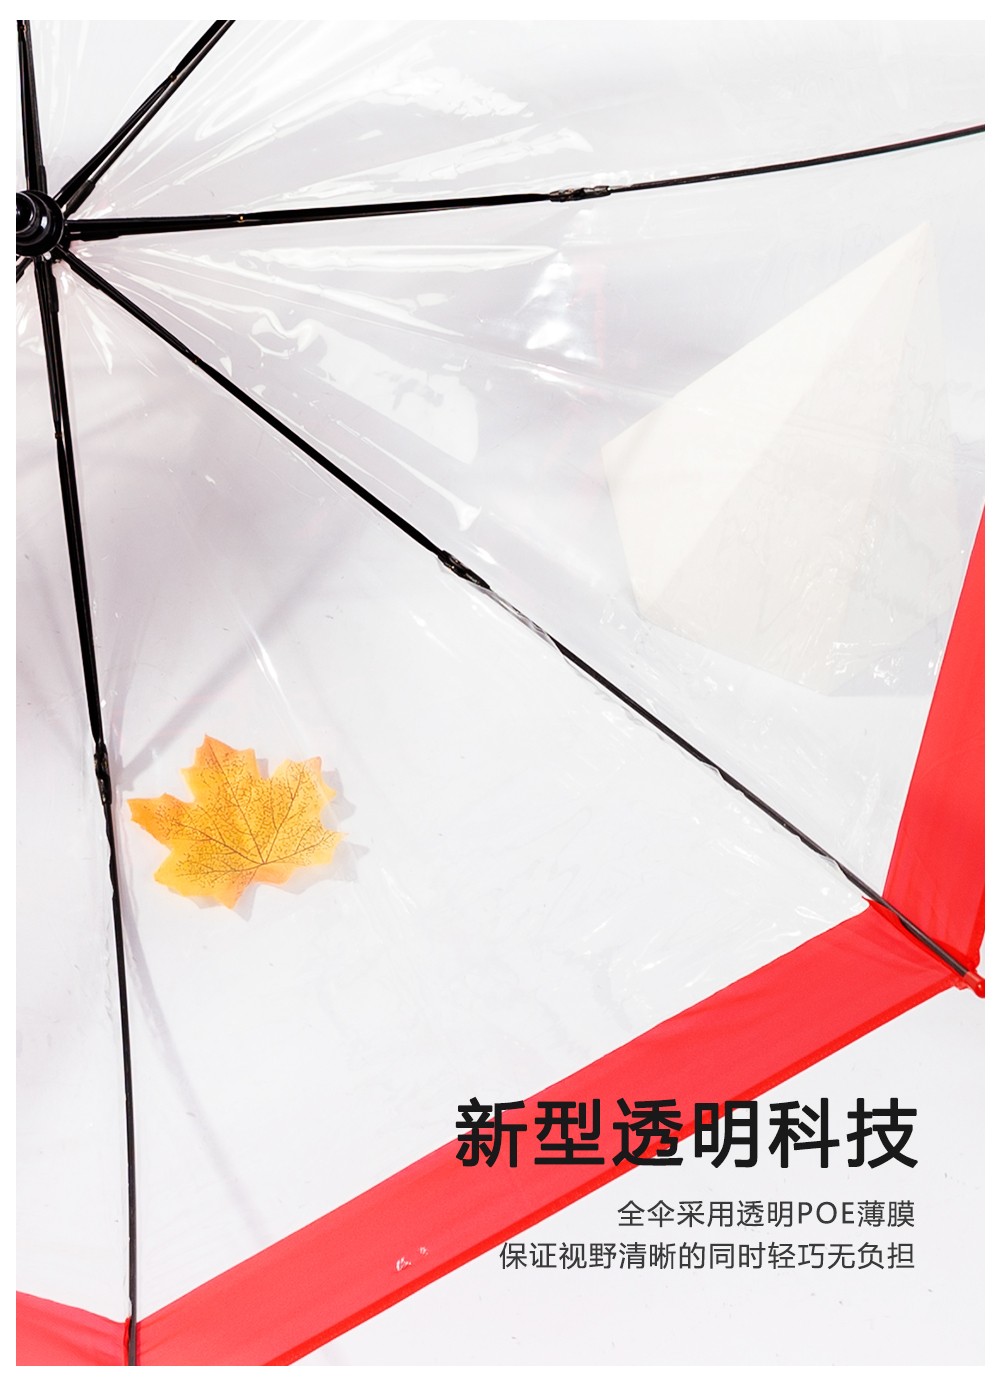 RST3466A接边雨伞长柄雨伞阿波罗拱形伞可爱蘑菇伞批发详情图5